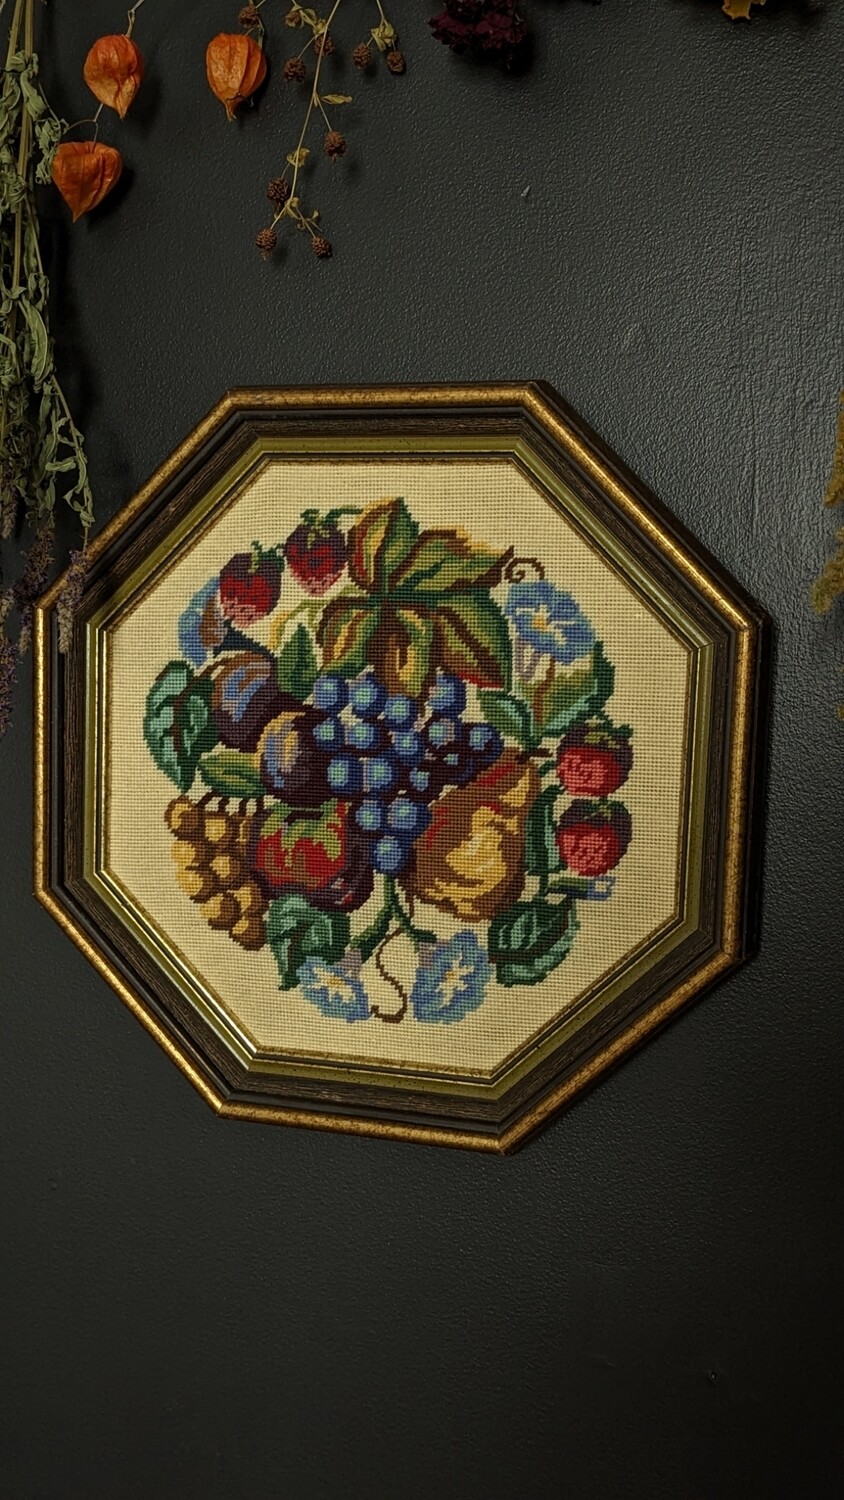 fruits frame